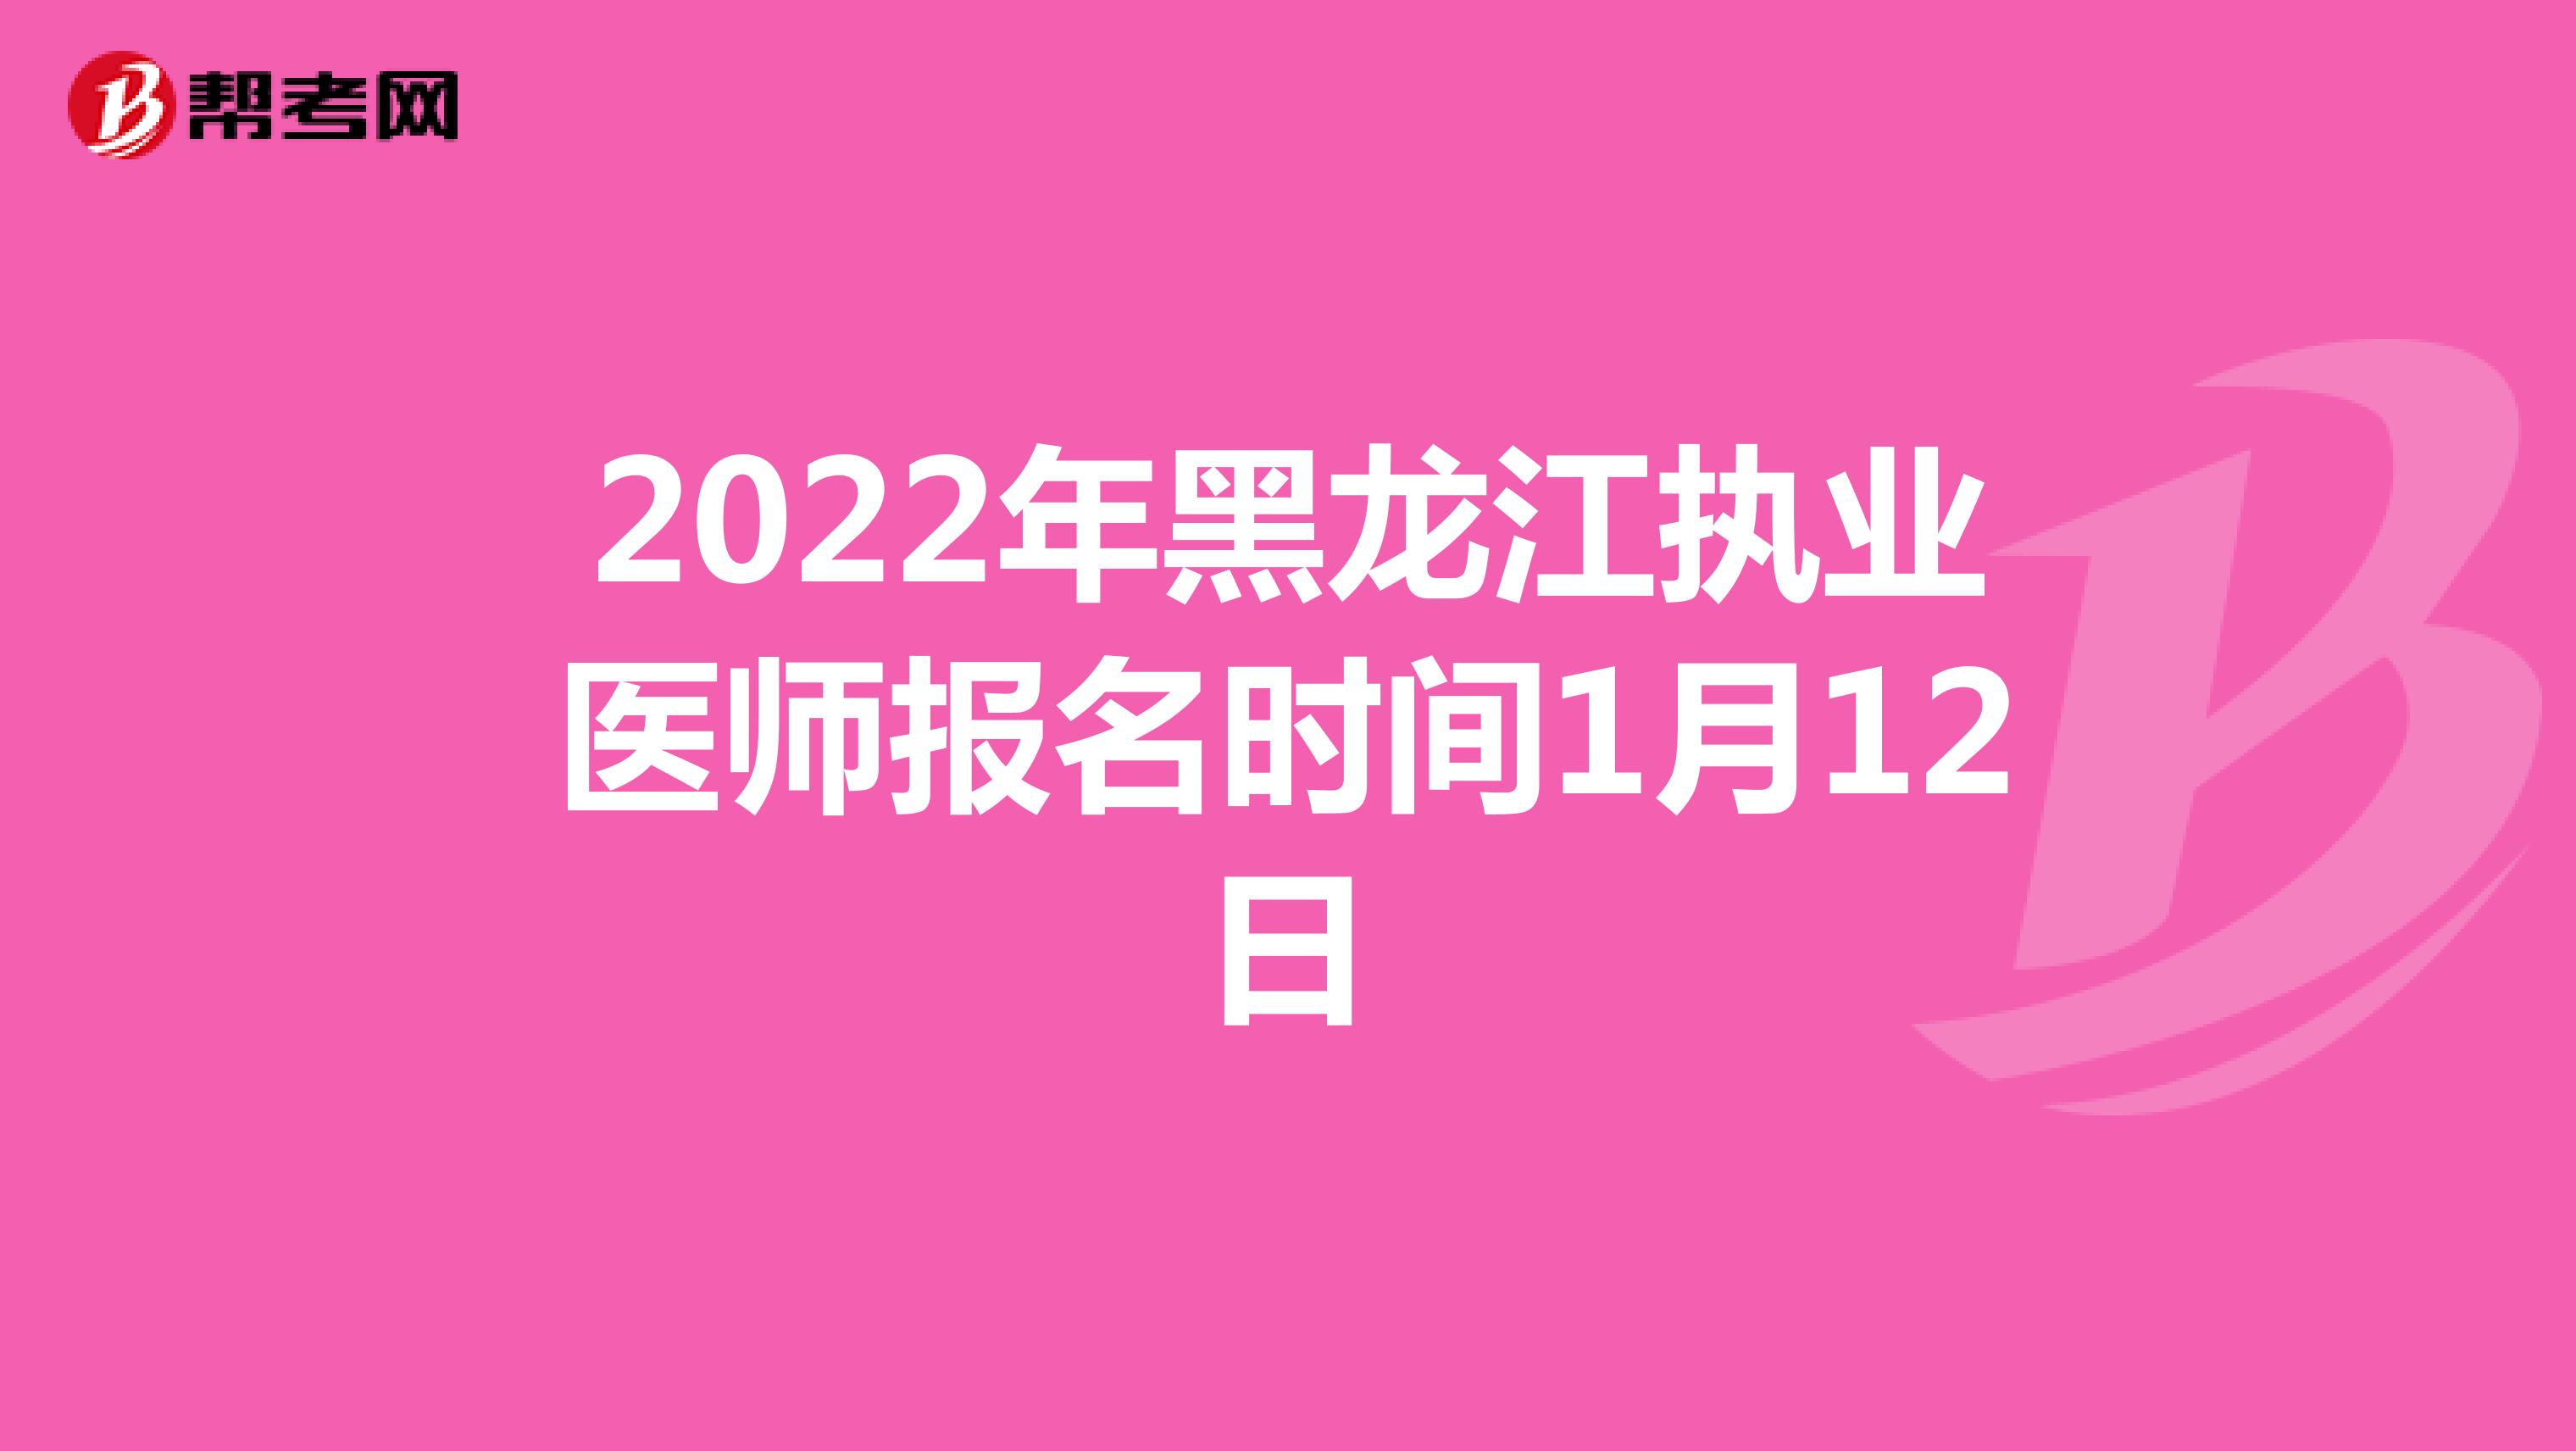 2022年黑龙江执业医师报名时间1月12日